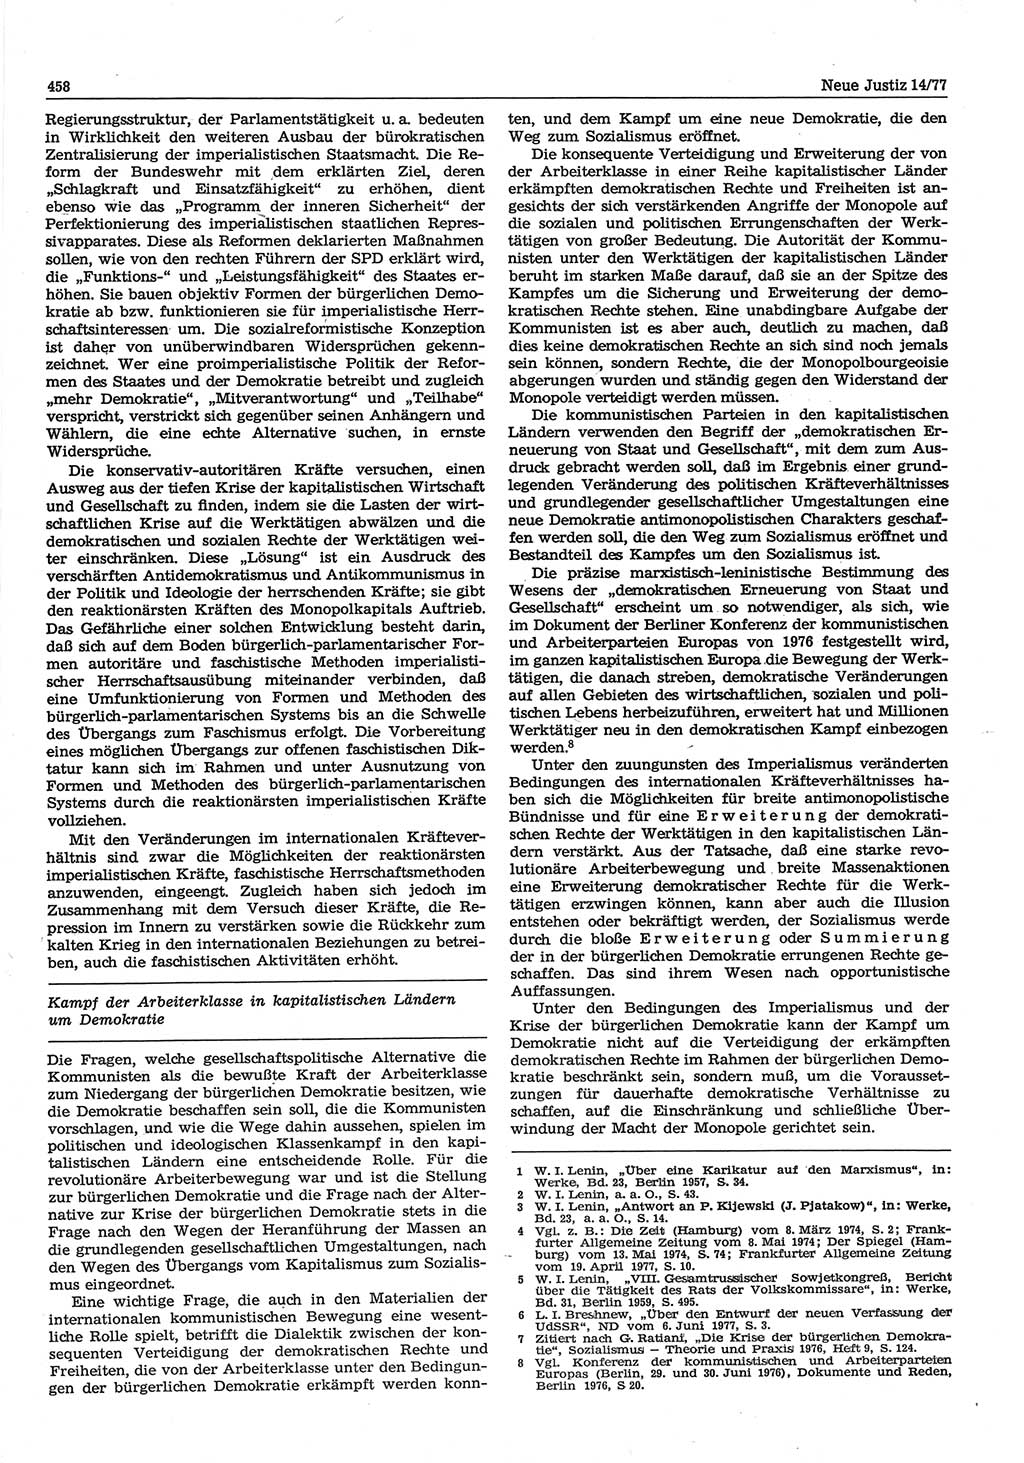 Neue Justiz (NJ), Zeitschrift für Recht und Rechtswissenschaft-Zeitschrift, sozialistisches Recht und Gesetzlichkeit, 31. Jahrgang 1977, Seite 458 (NJ DDR 1977, S. 458)